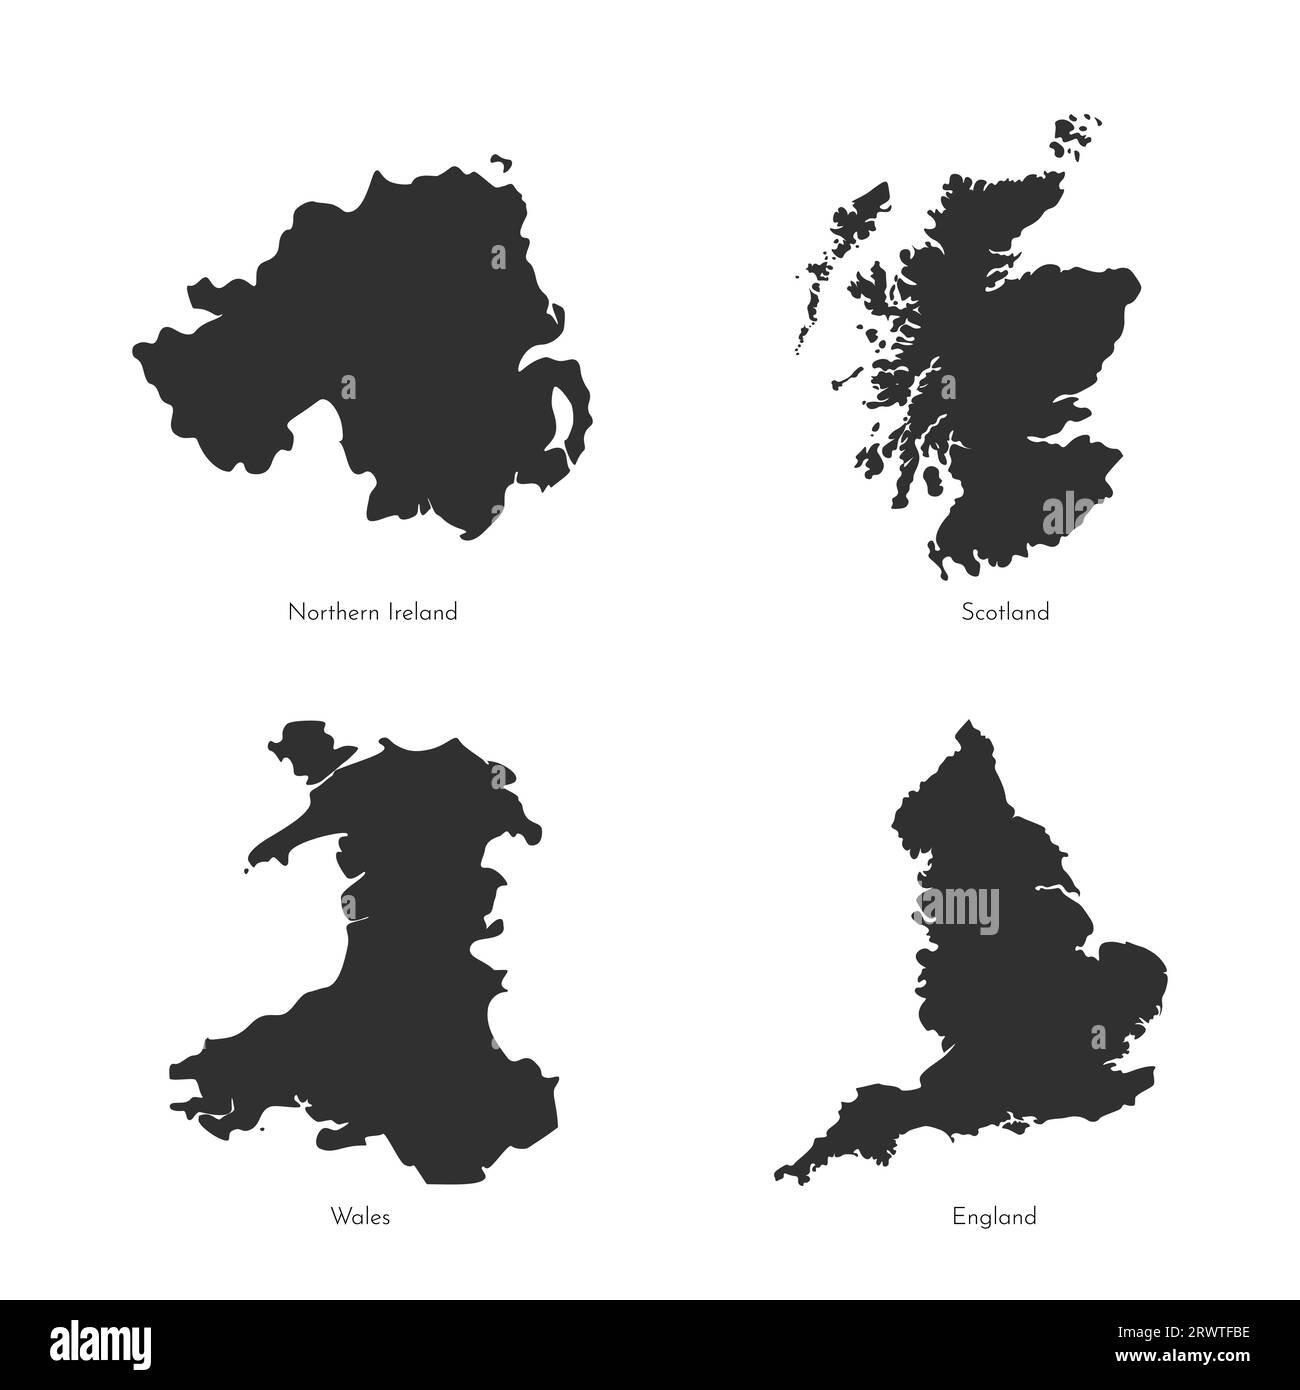 Serie vettoriale di illustrazioni isolate con mappe semplificate delle regioni del Regno Unito. Profilo grigio scuro di Scozia, Inghilterra, Irlanda del Nord, Galles (Regno Unito Illustrazione Vettoriale